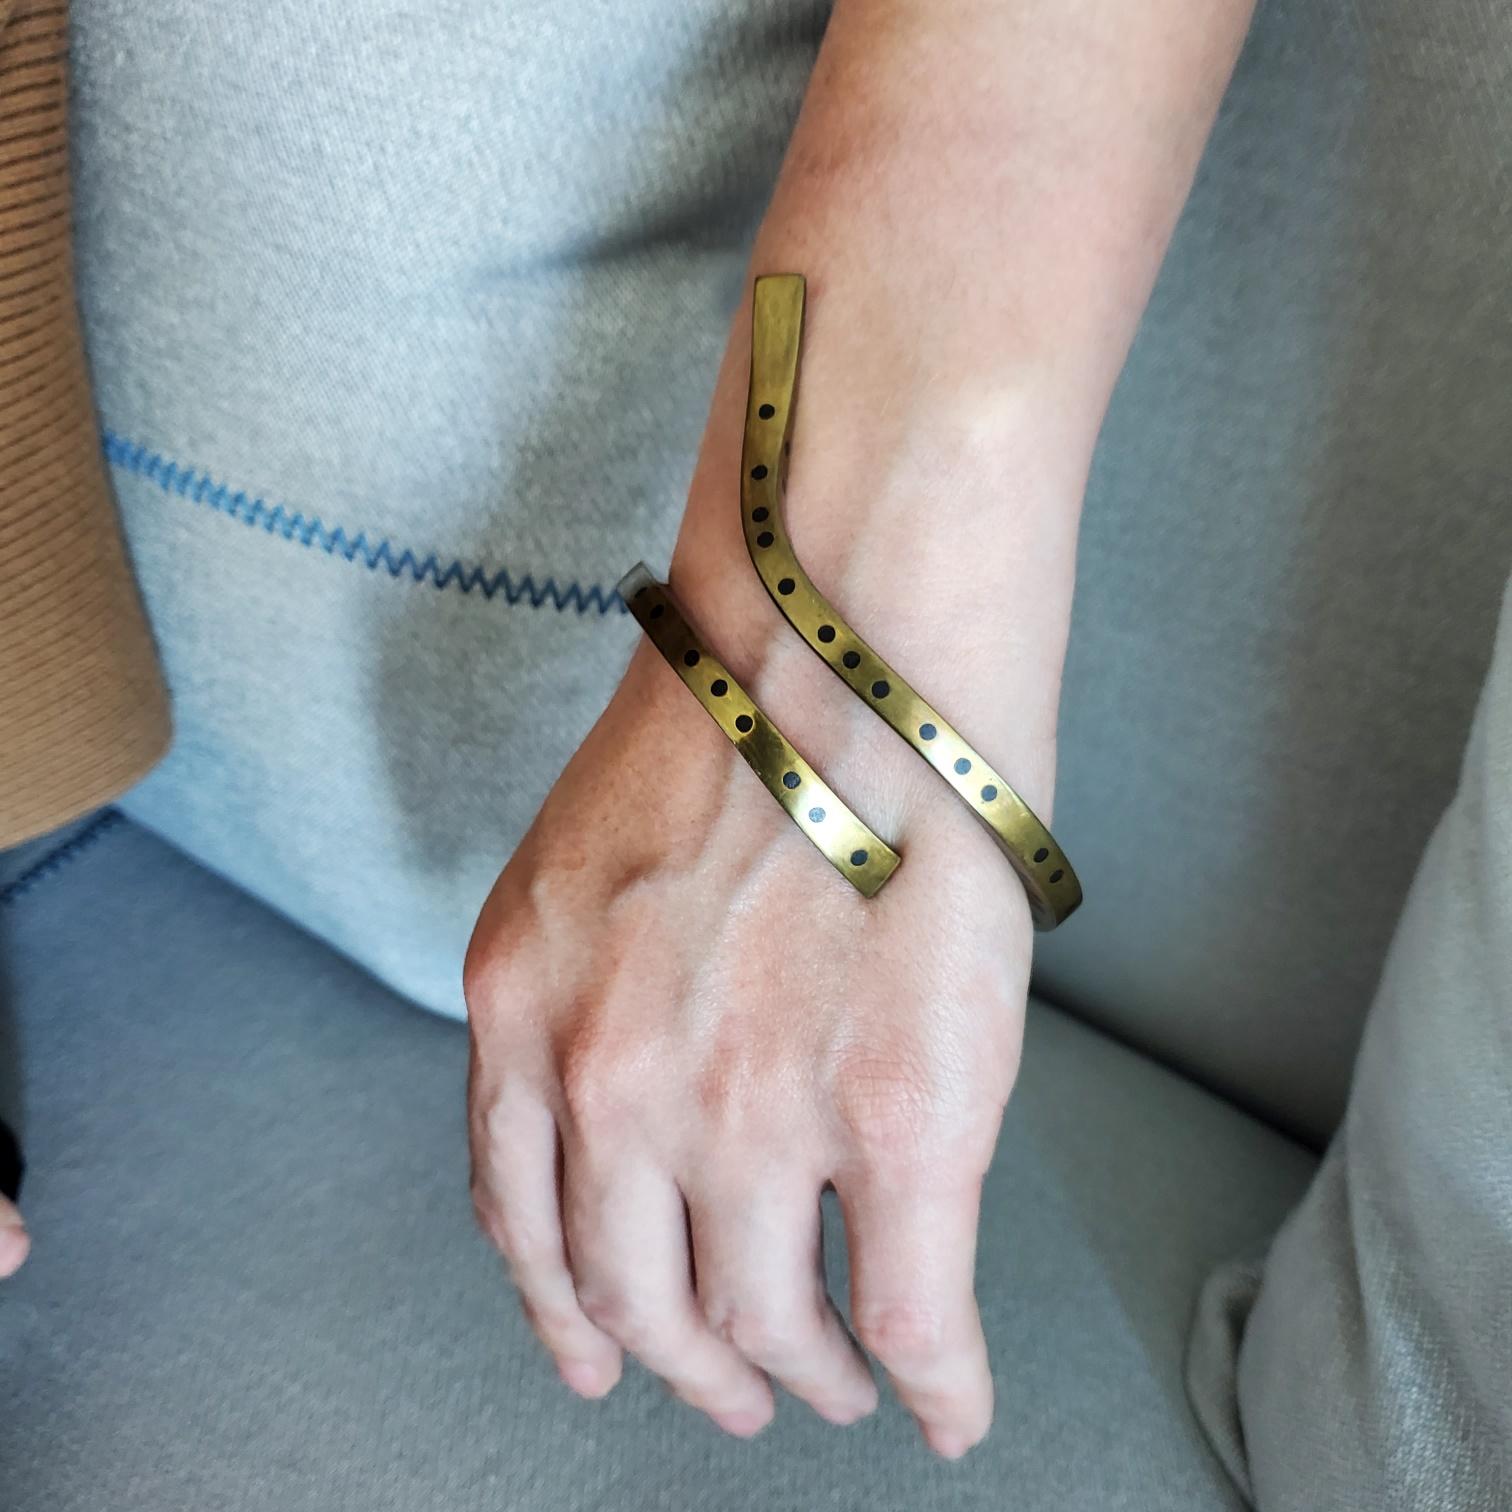 Un bracelet bangle conçu par Thomas Gentille (1936-).

Une pièce sculpturale d'art portable, créée à New York par l'artiste et bijoutier Thomas Gentille, à la fin des années 1970. Ce bracelet bangle aérodynamique est une pièce unique, réalisée de